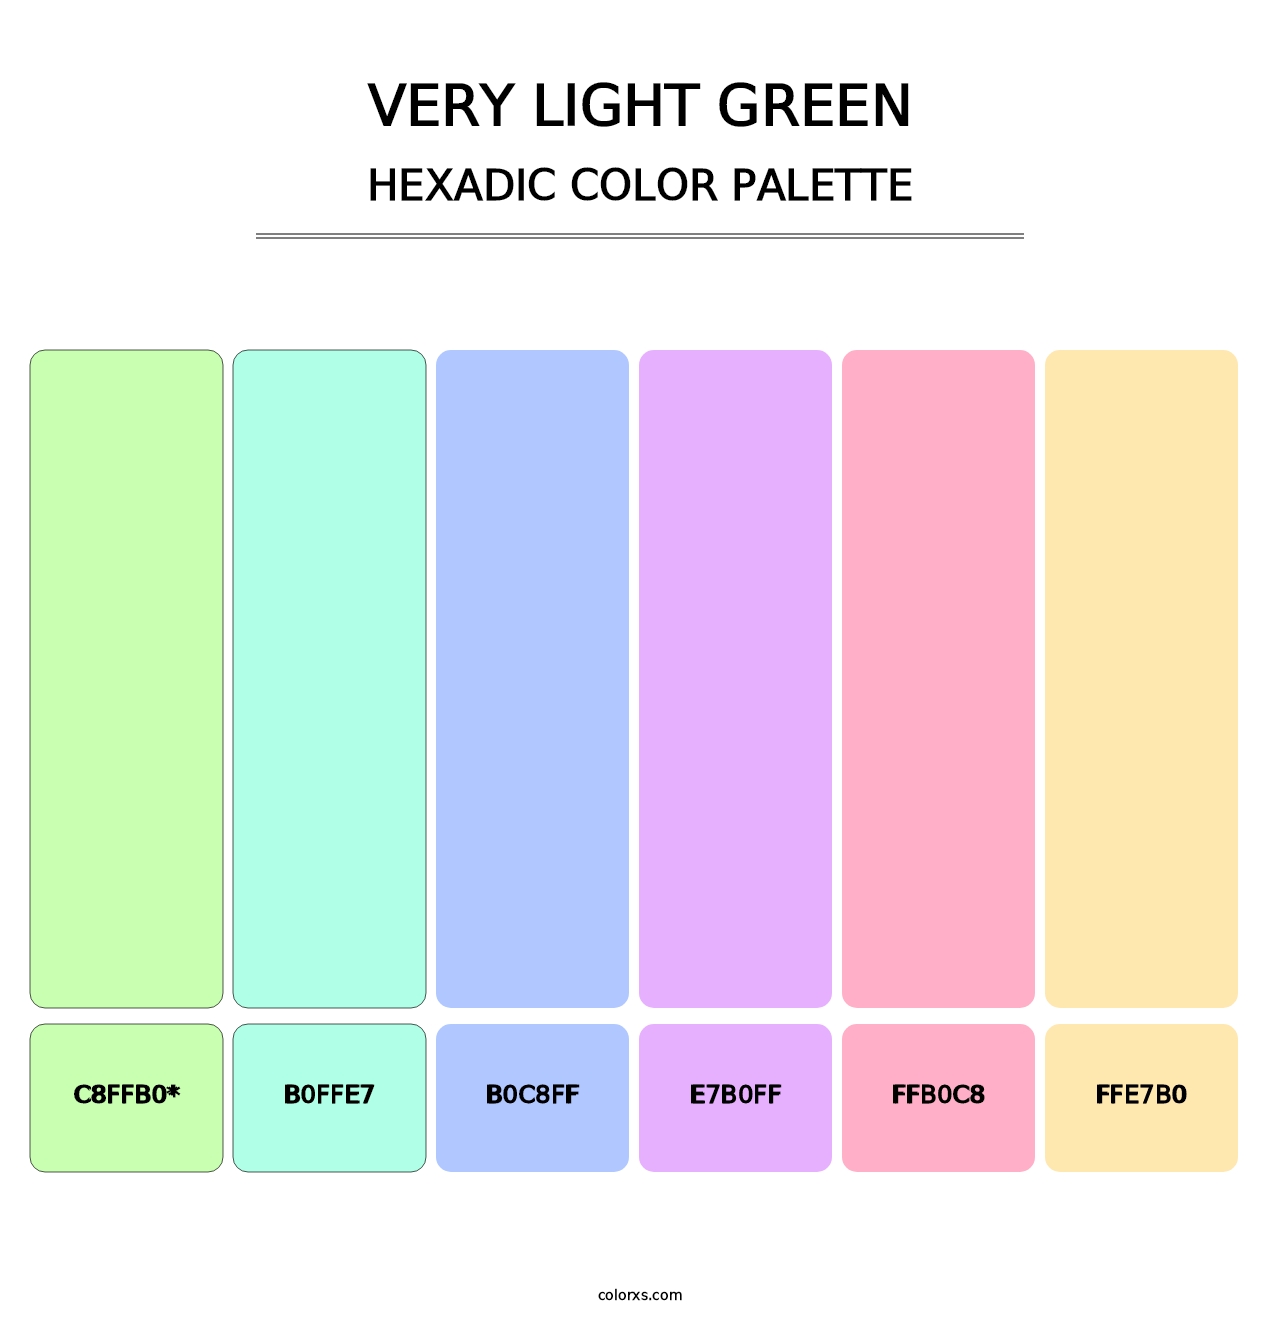 Very Light Green - Hexadic Color Palette